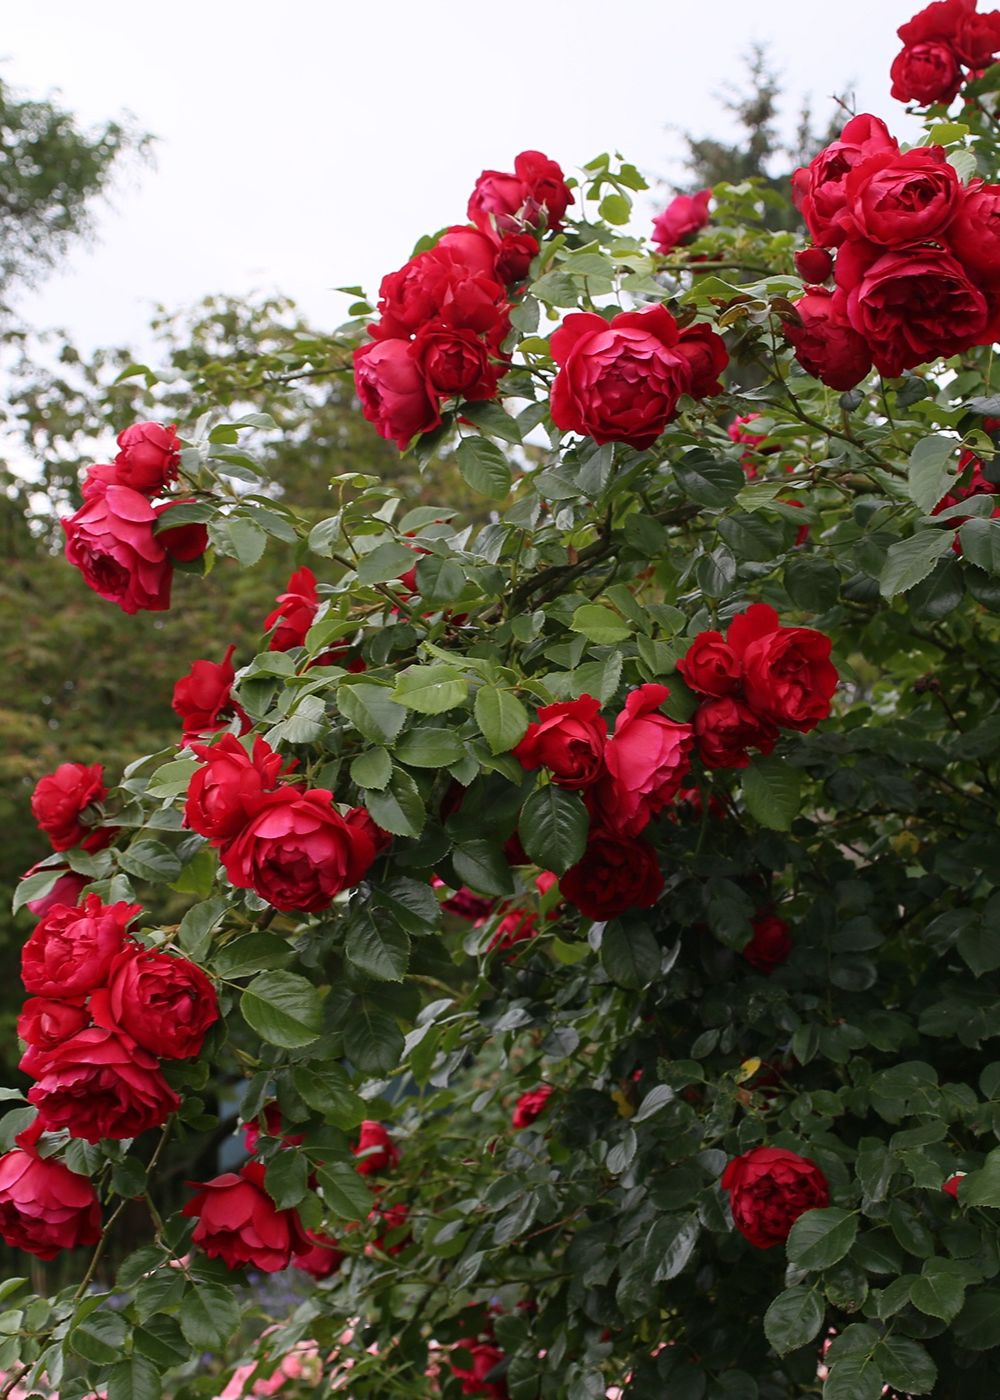 Arborose® Florentina™ Climbing Rose Bare Root - Menagerie Farm & Flower